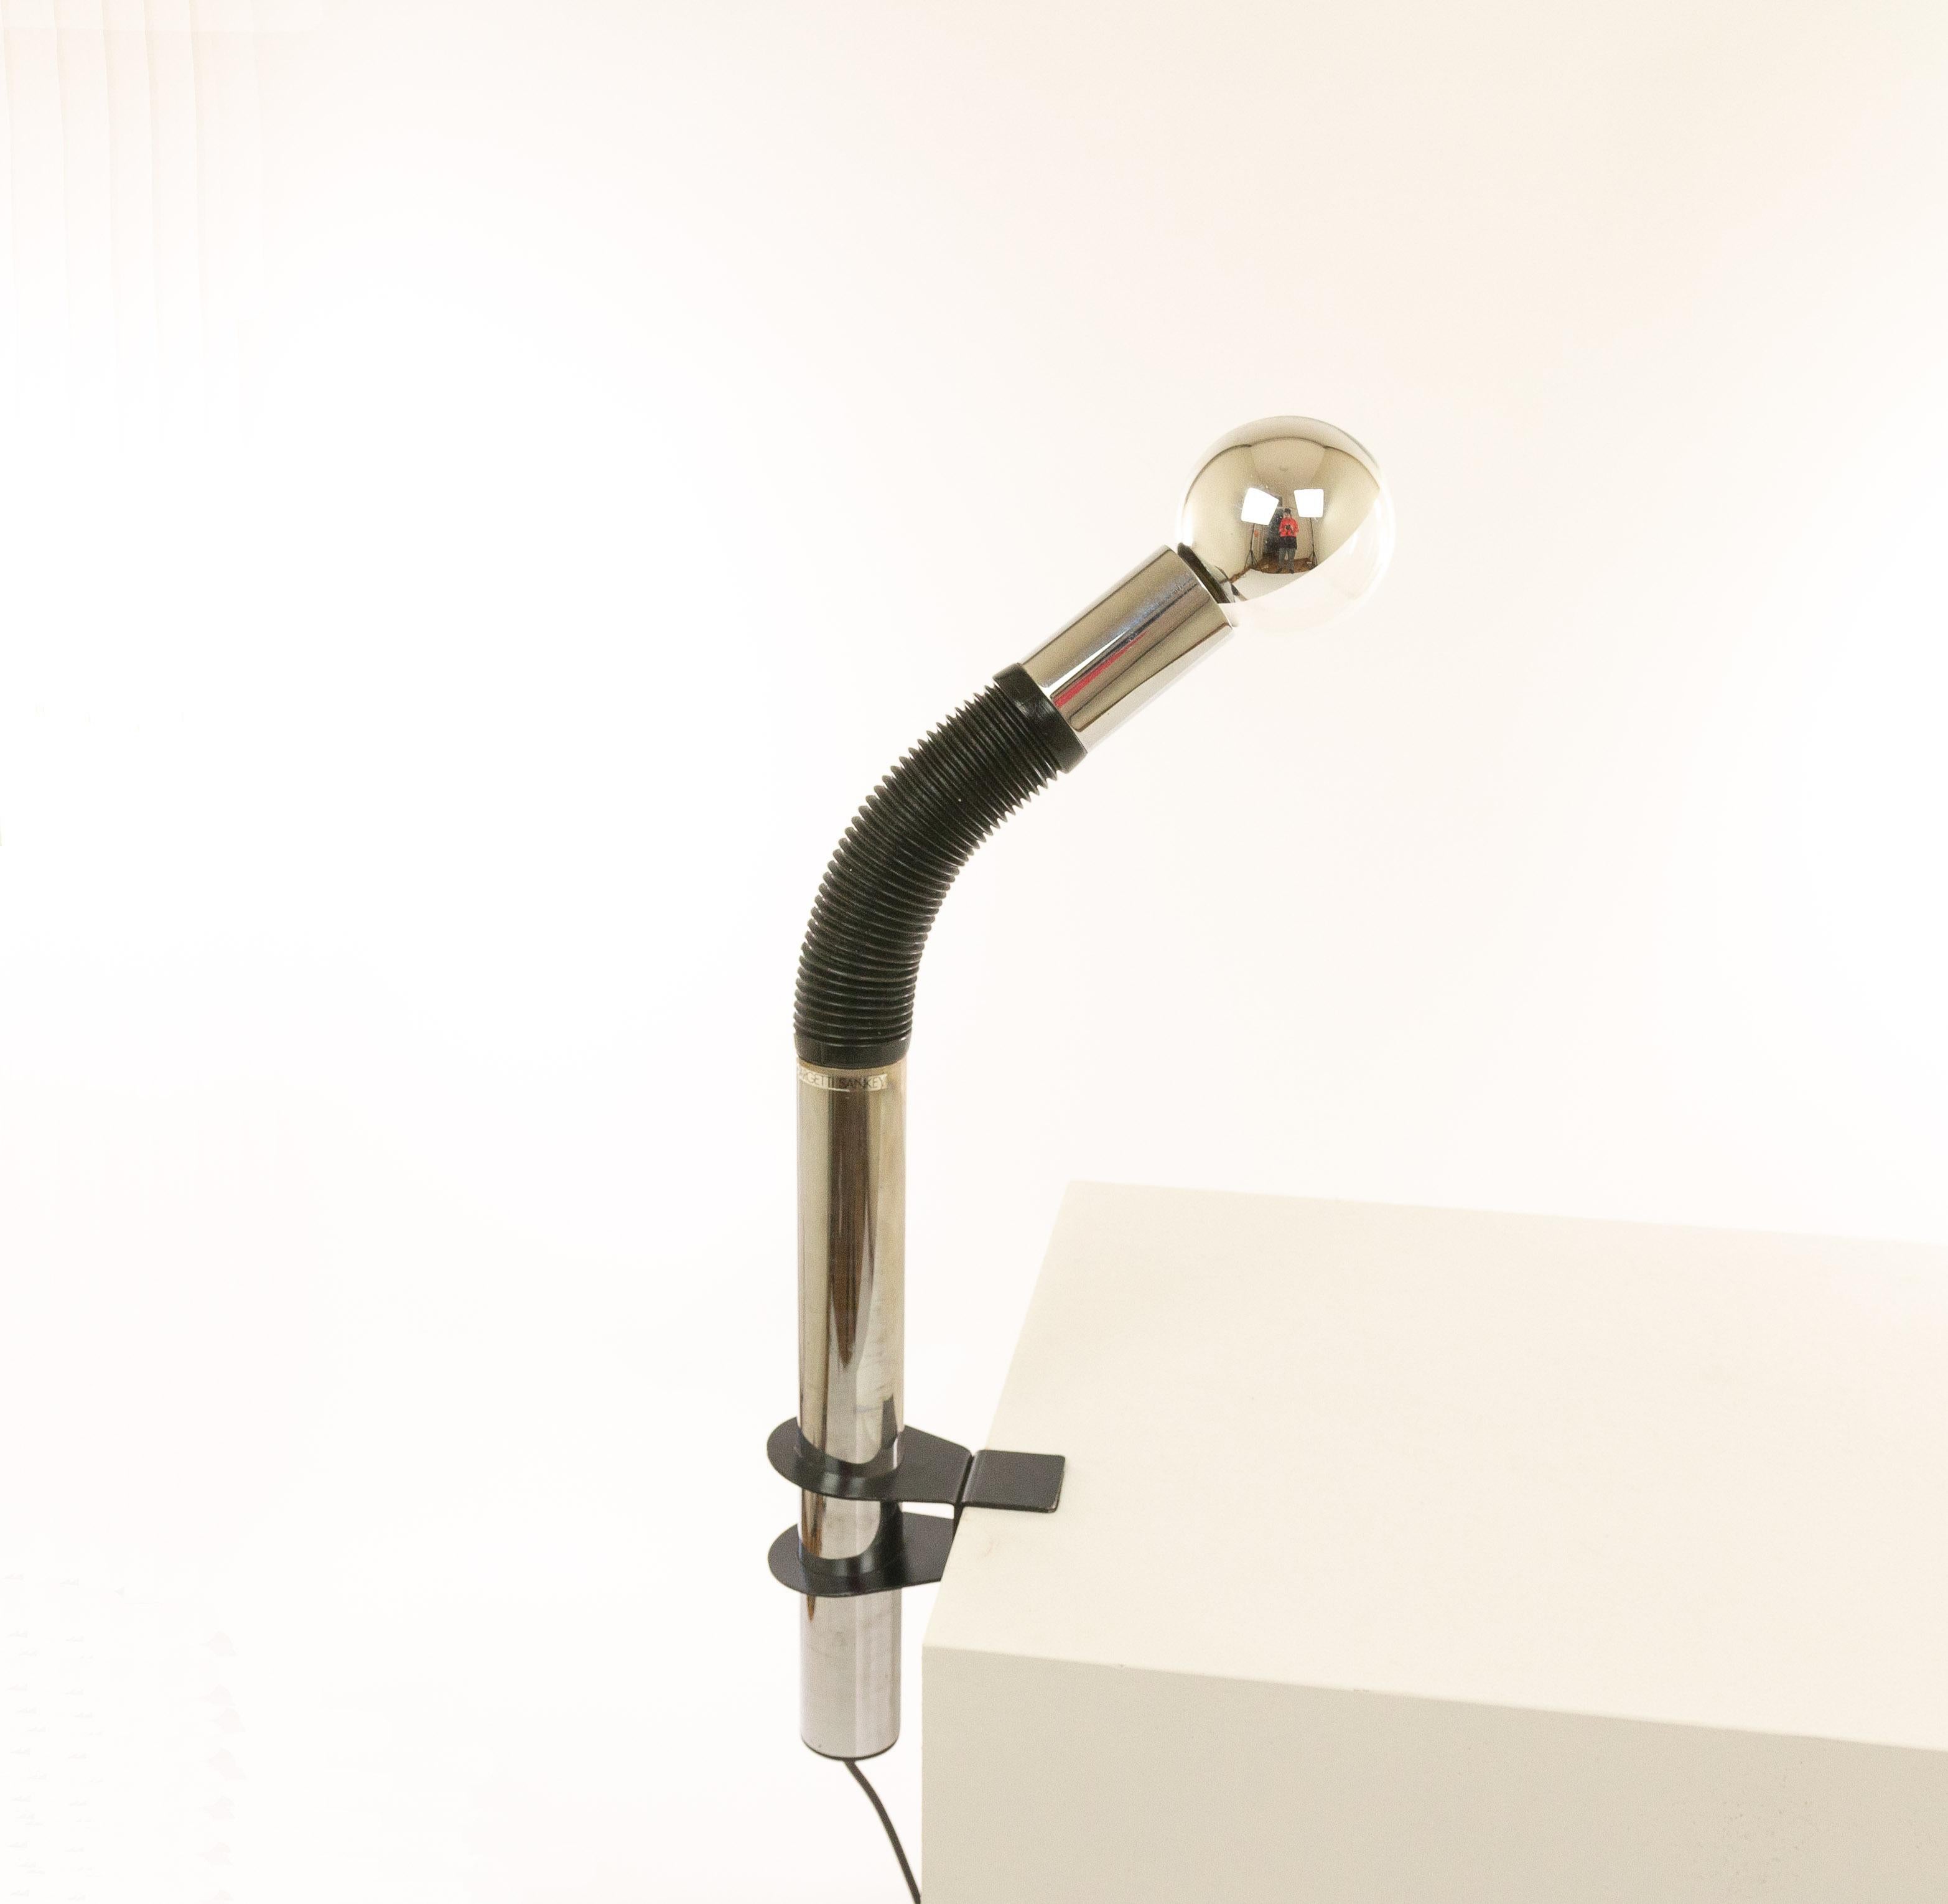 Lampe de table Elbow conçue par E. Bellini et fabriquée par Targetti Sankey dans les années 1970.

La lampe est composée d'un tube en métal chromé avec une pièce de connexion en caoutchouc noir. La construction offre une flexibilité totale.